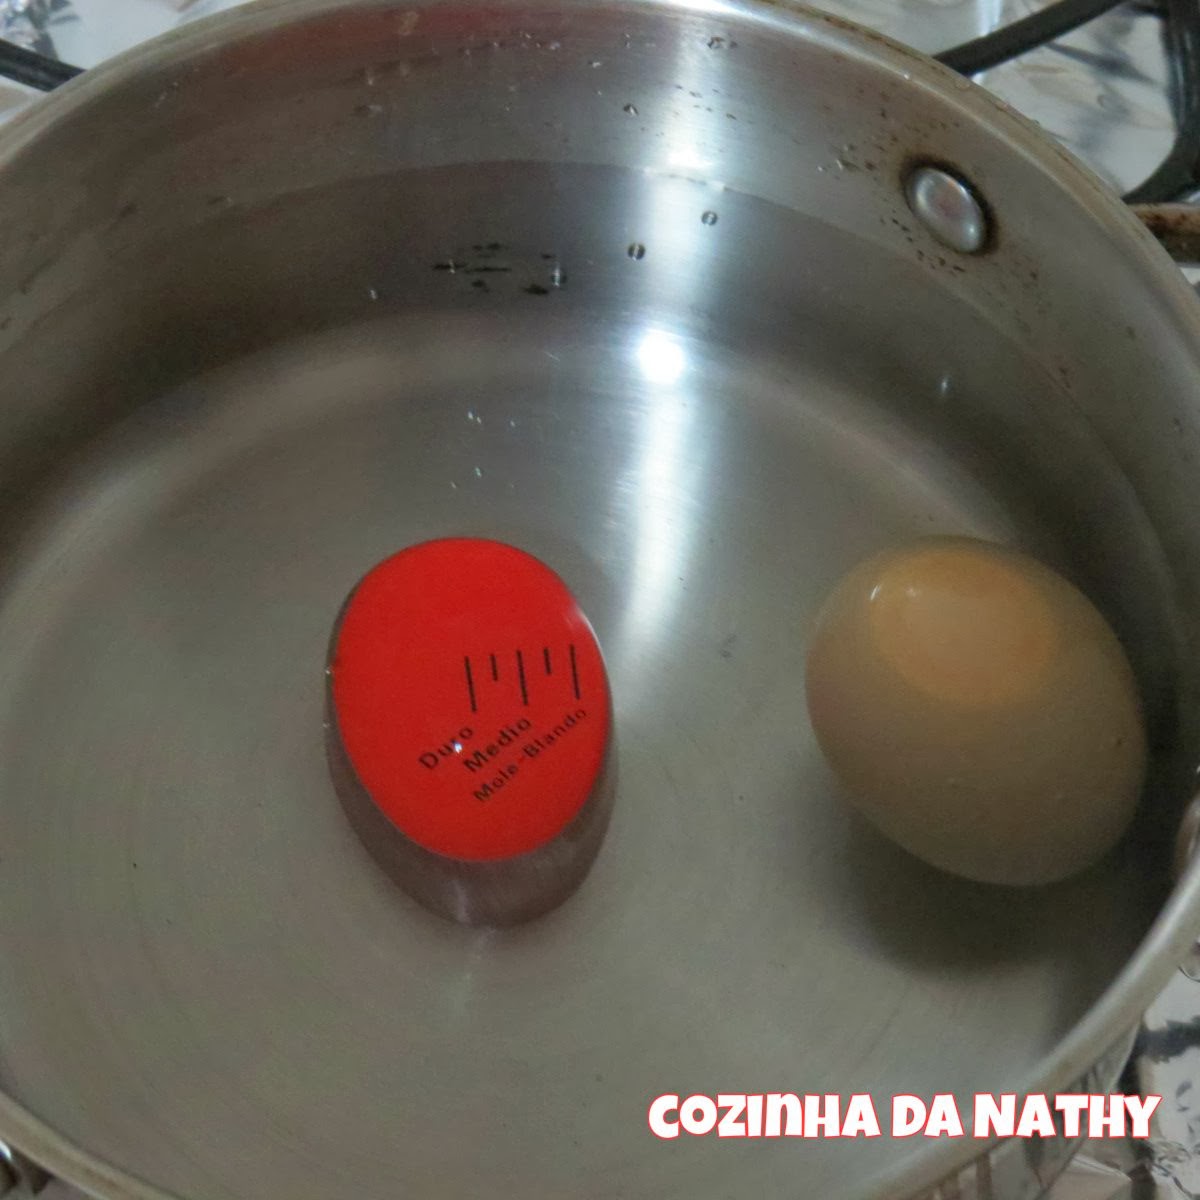 Cozinha Da Nathy 2014